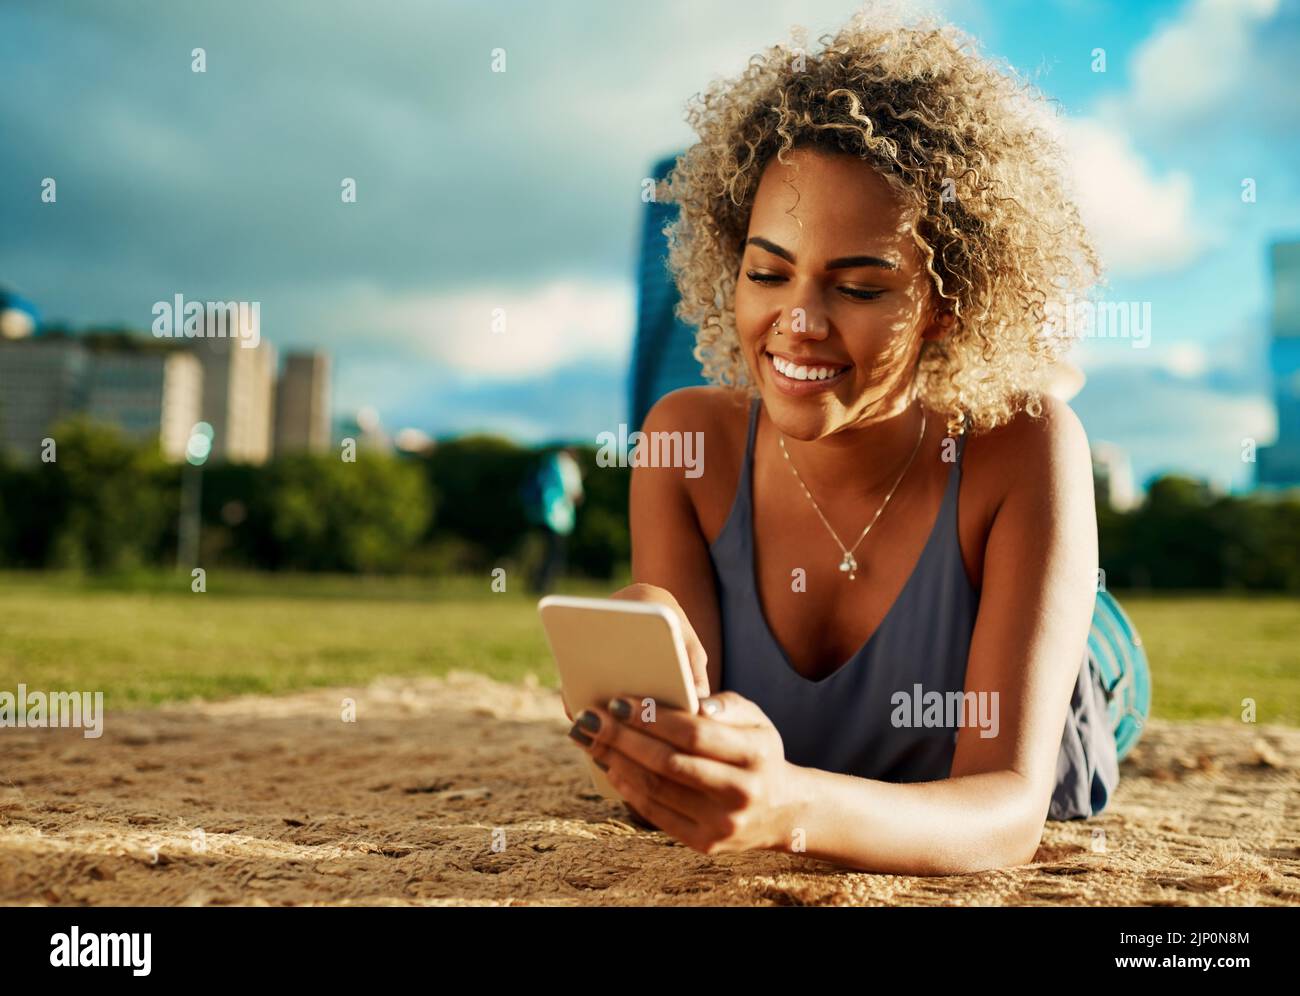 Je veux me joindre dans le parc. Une jeune femme attirante utilisant un smartphone tout en étant allongé dans un parc. Banque D'Images